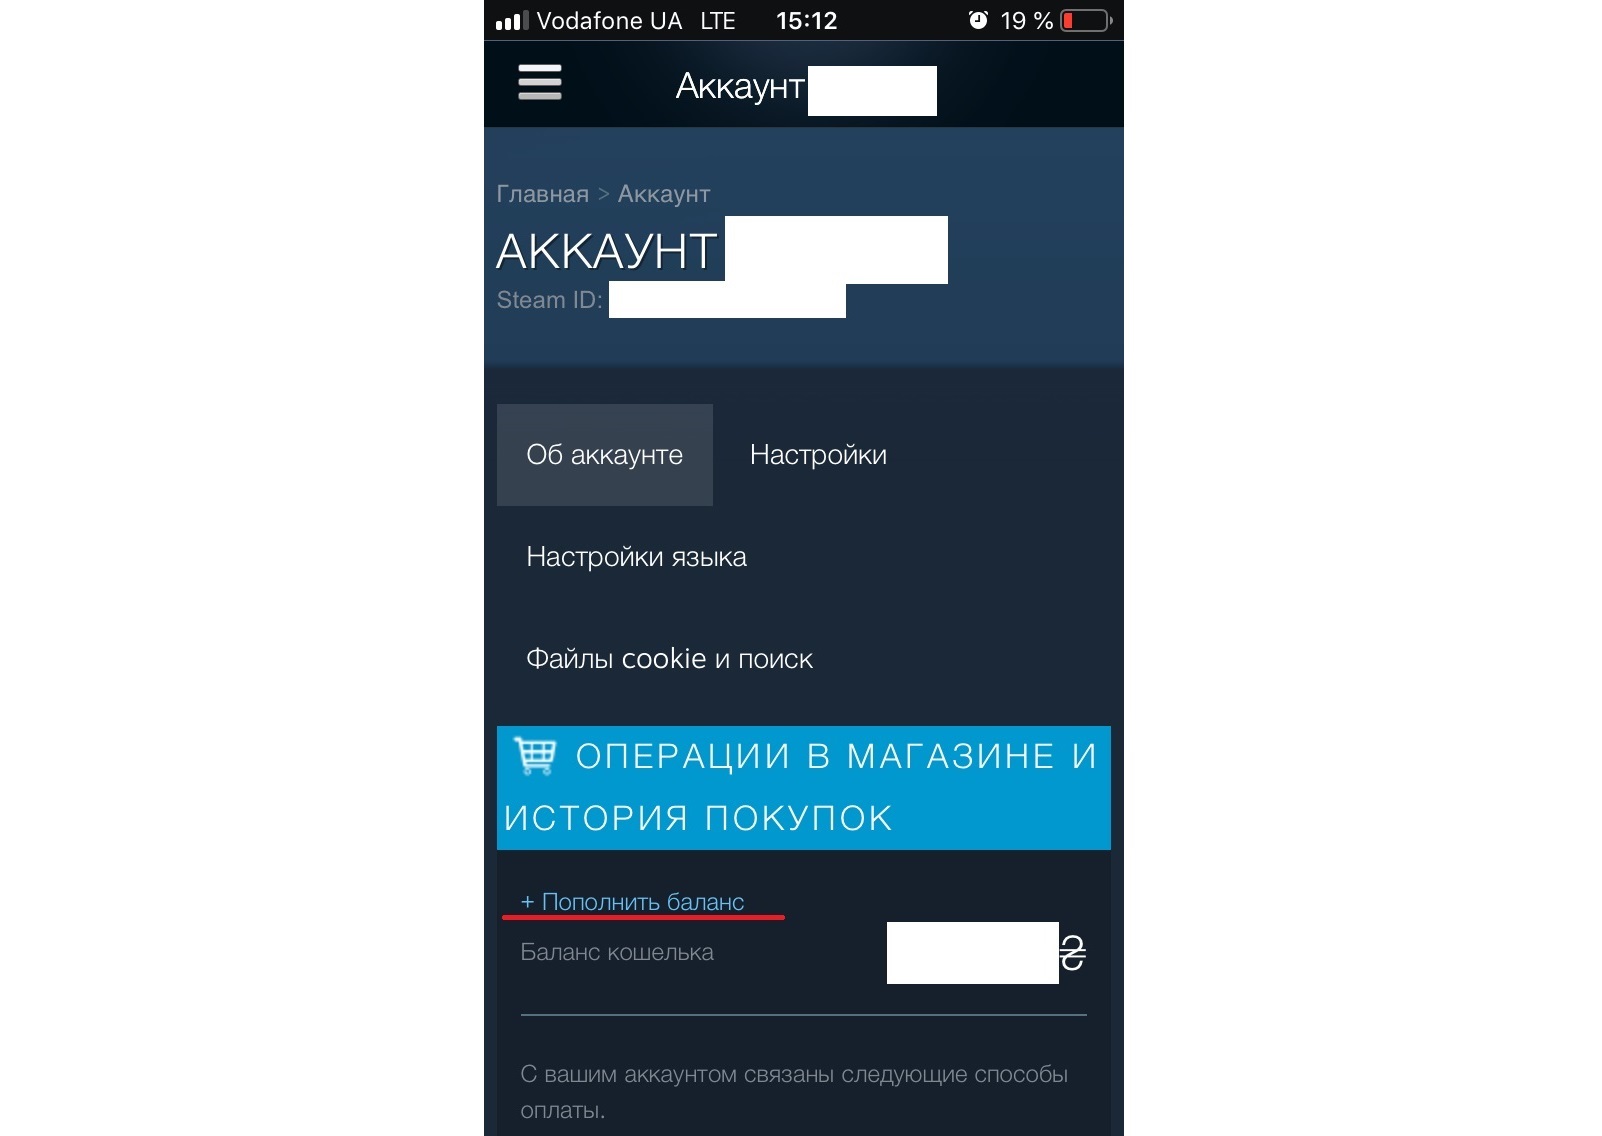 Как жителям Донецкой и Луганской областей обойти блок на покупки в Steam и Google Play Market (инструкция) 5